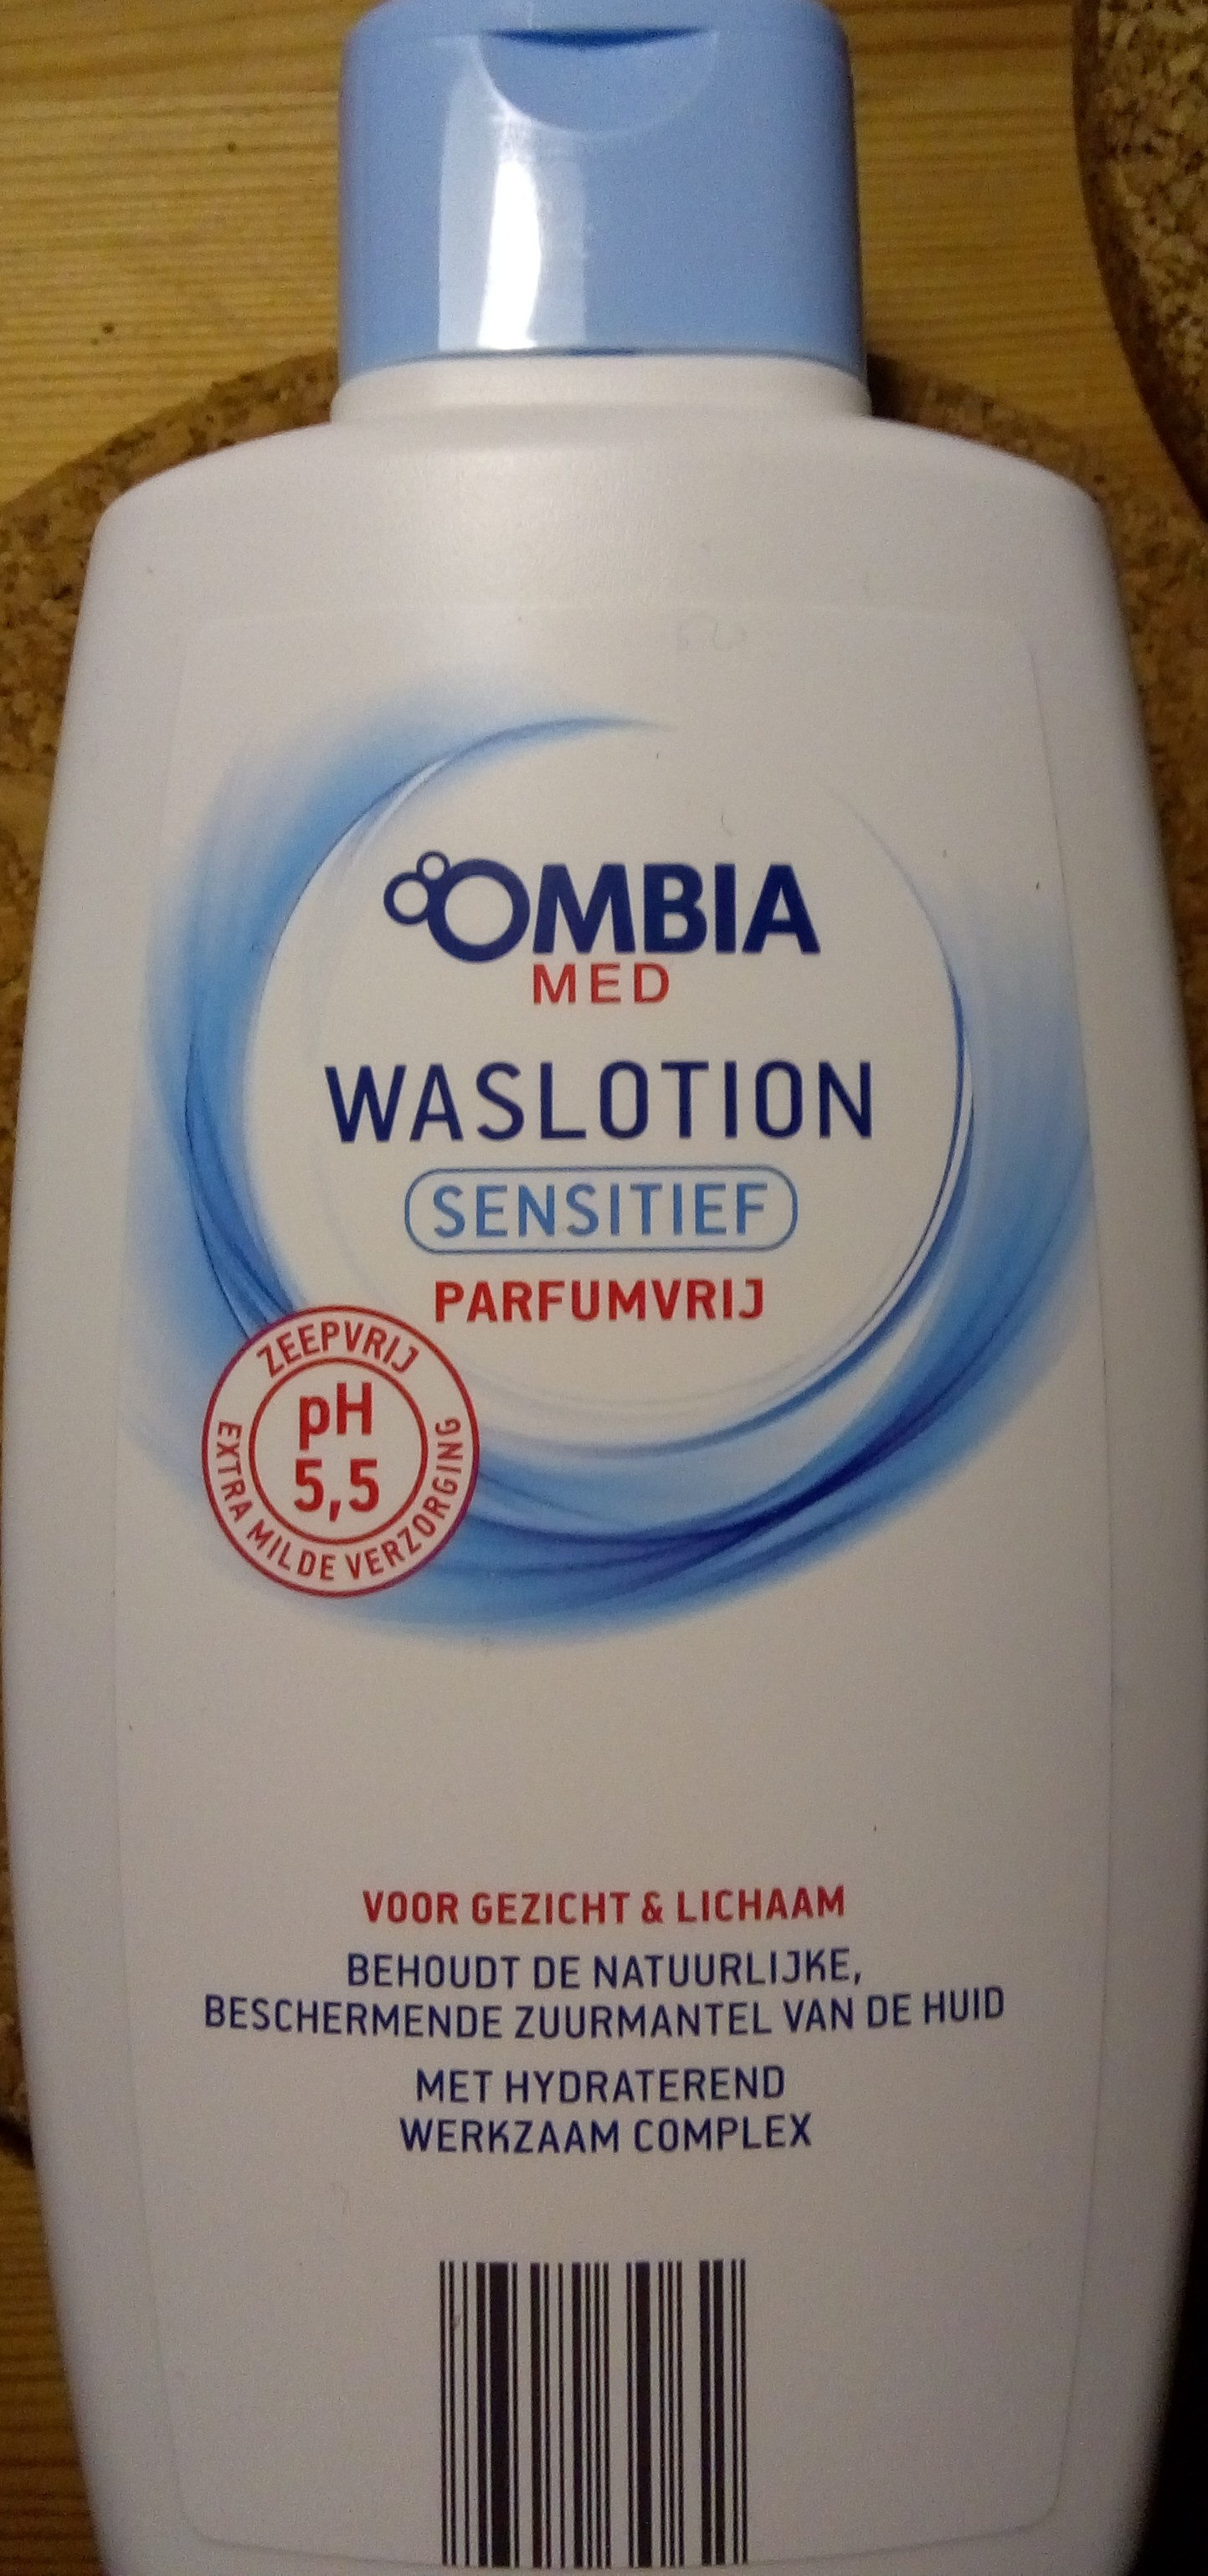 Ombia Med waslotion sensitief - Produktas - nl